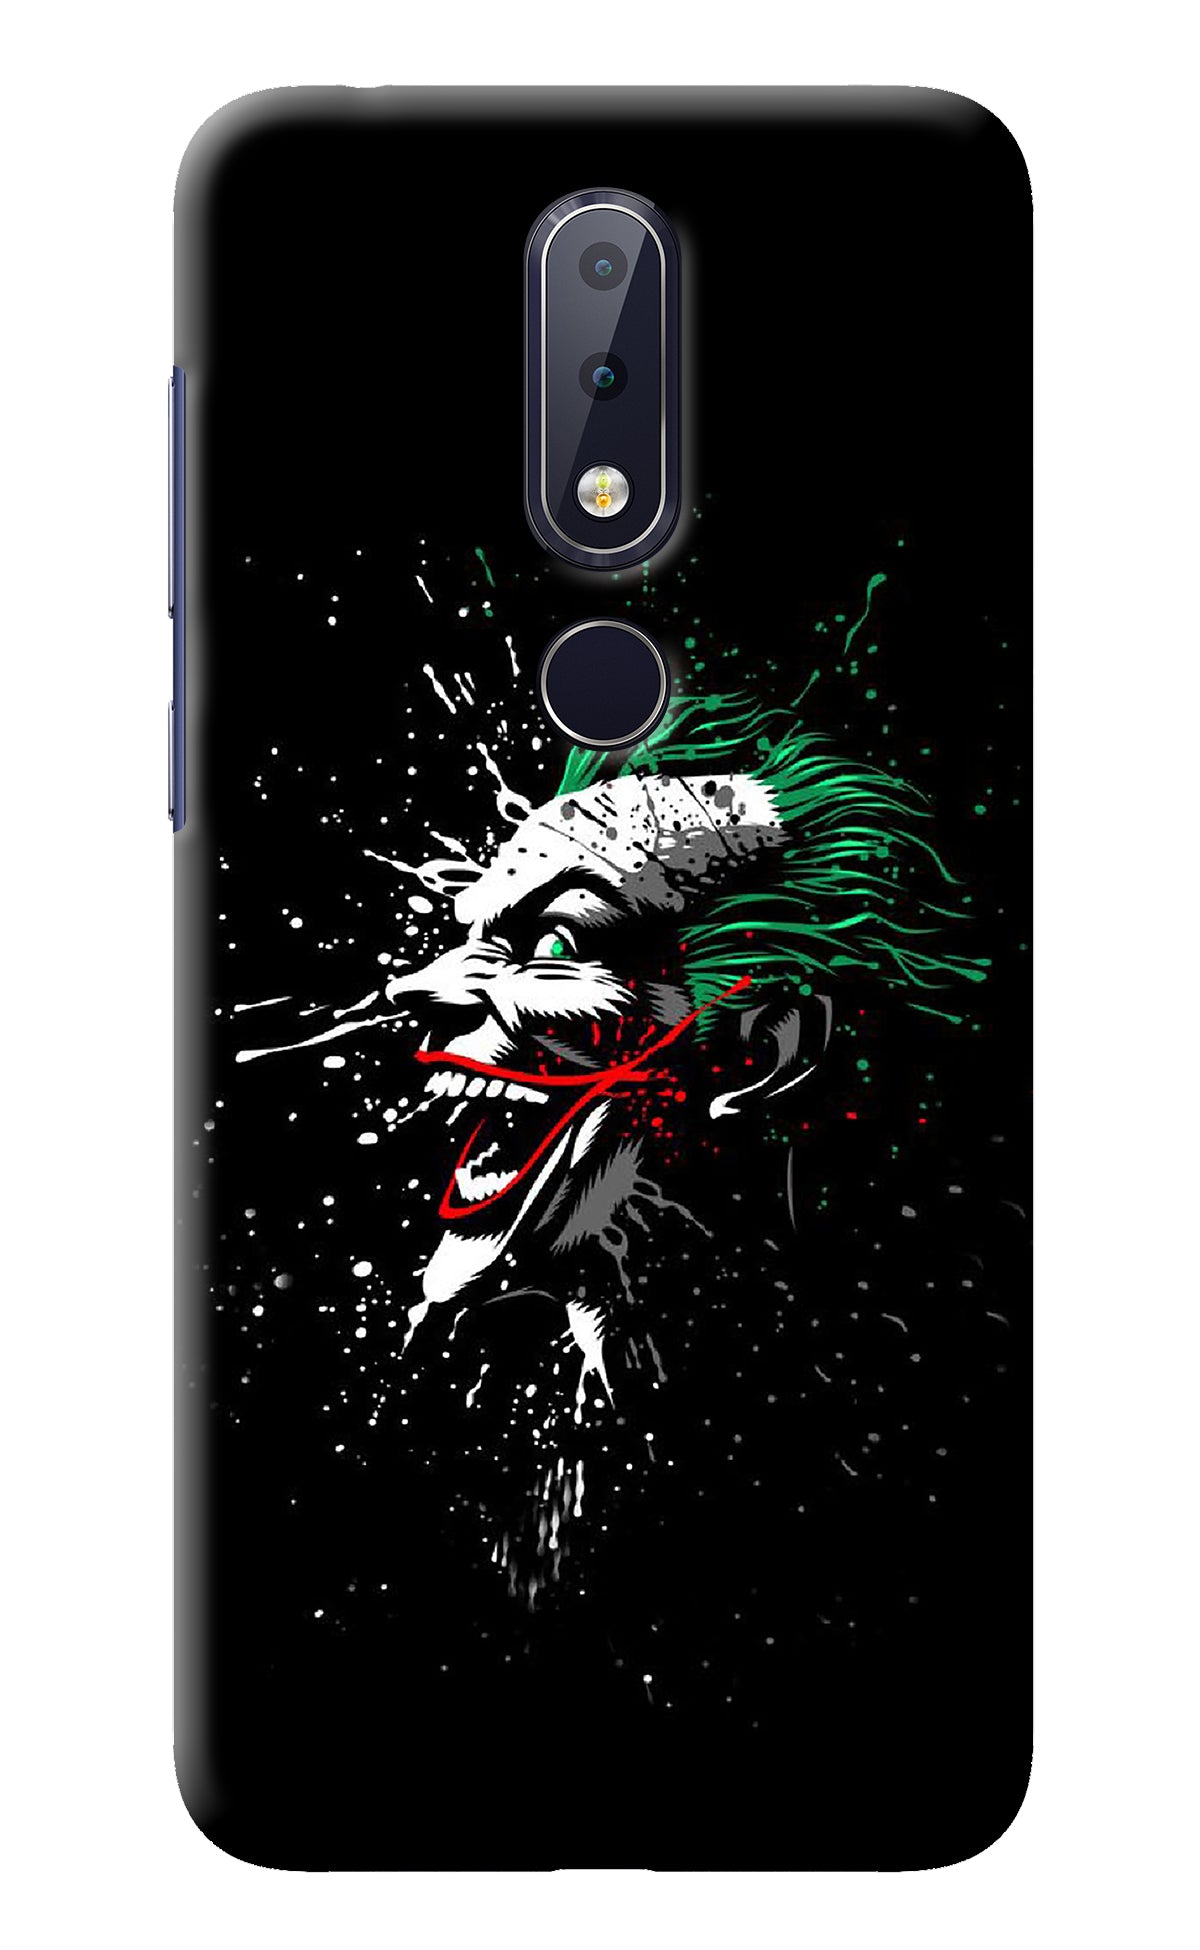 Joker Nokia 6.1 plus Back Cover